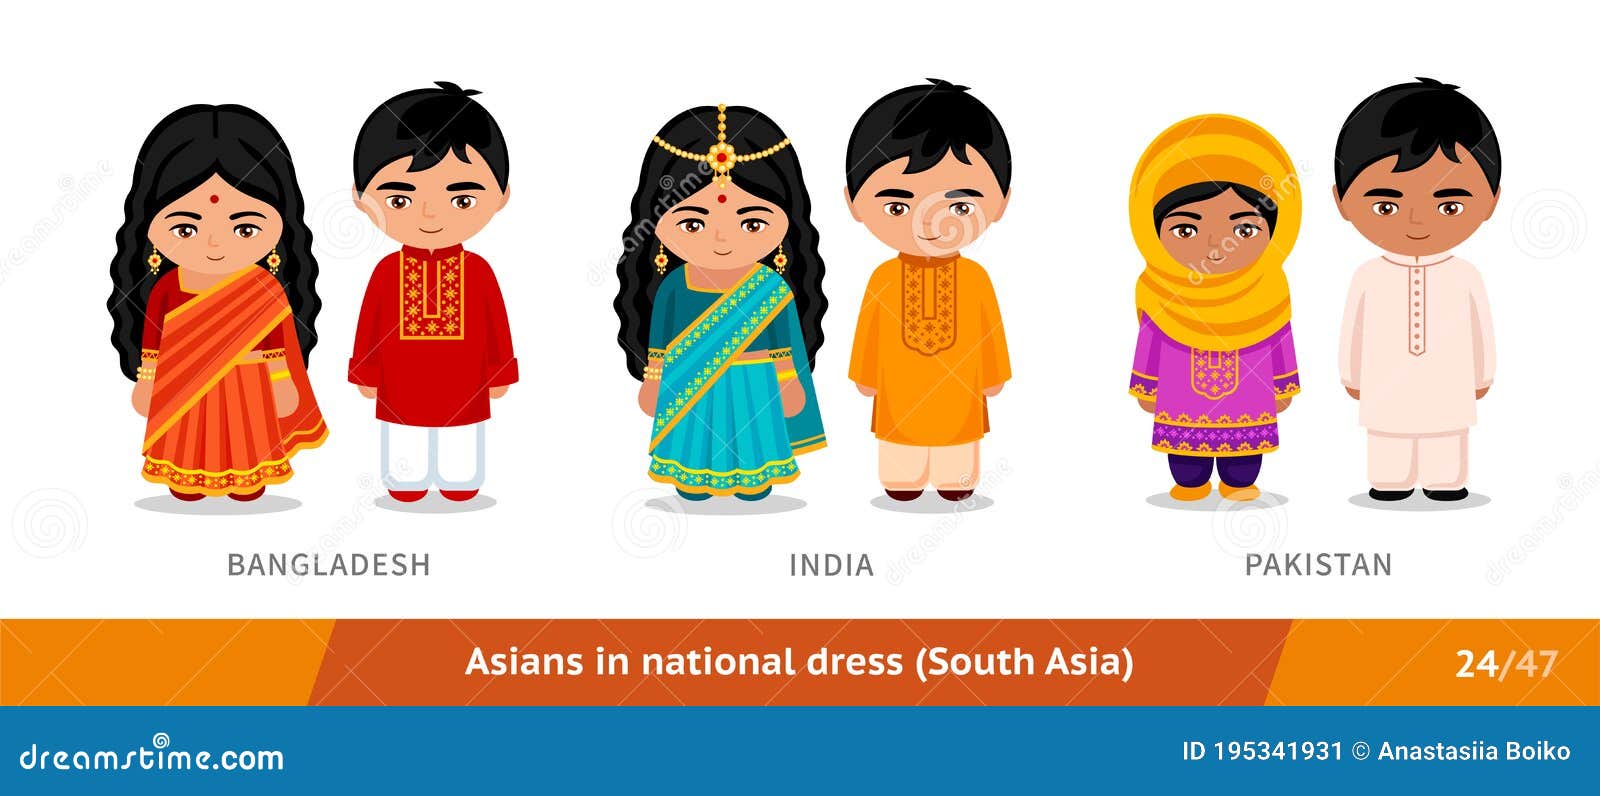 μπανγκλαντές πακιστάν. άνδρες και γυναίκες με εθνική ενδυμασία. σύνολο  ασιατών που φορούν εθνοτικά ρούχα. Διανυσματική απεικόνιση - εικονογραφία  από : 195341931